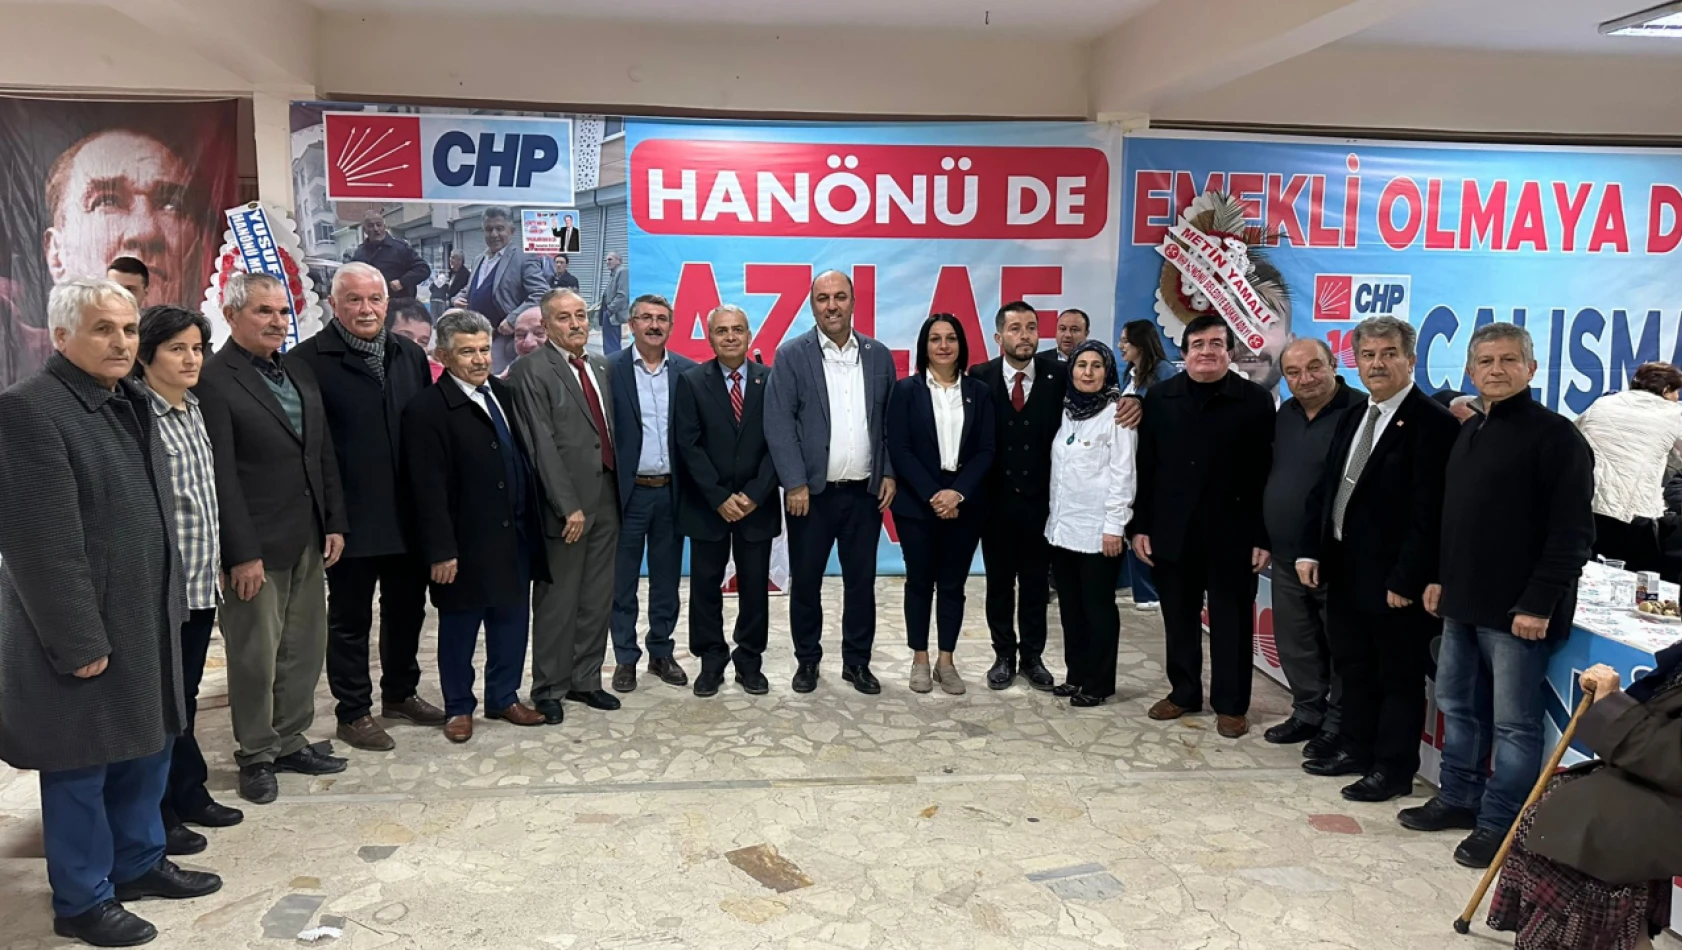 CHP İl Başkanı Dilek İlke Karabacak: 'Biz Kazandığımızda Hanönü Kazanacak'